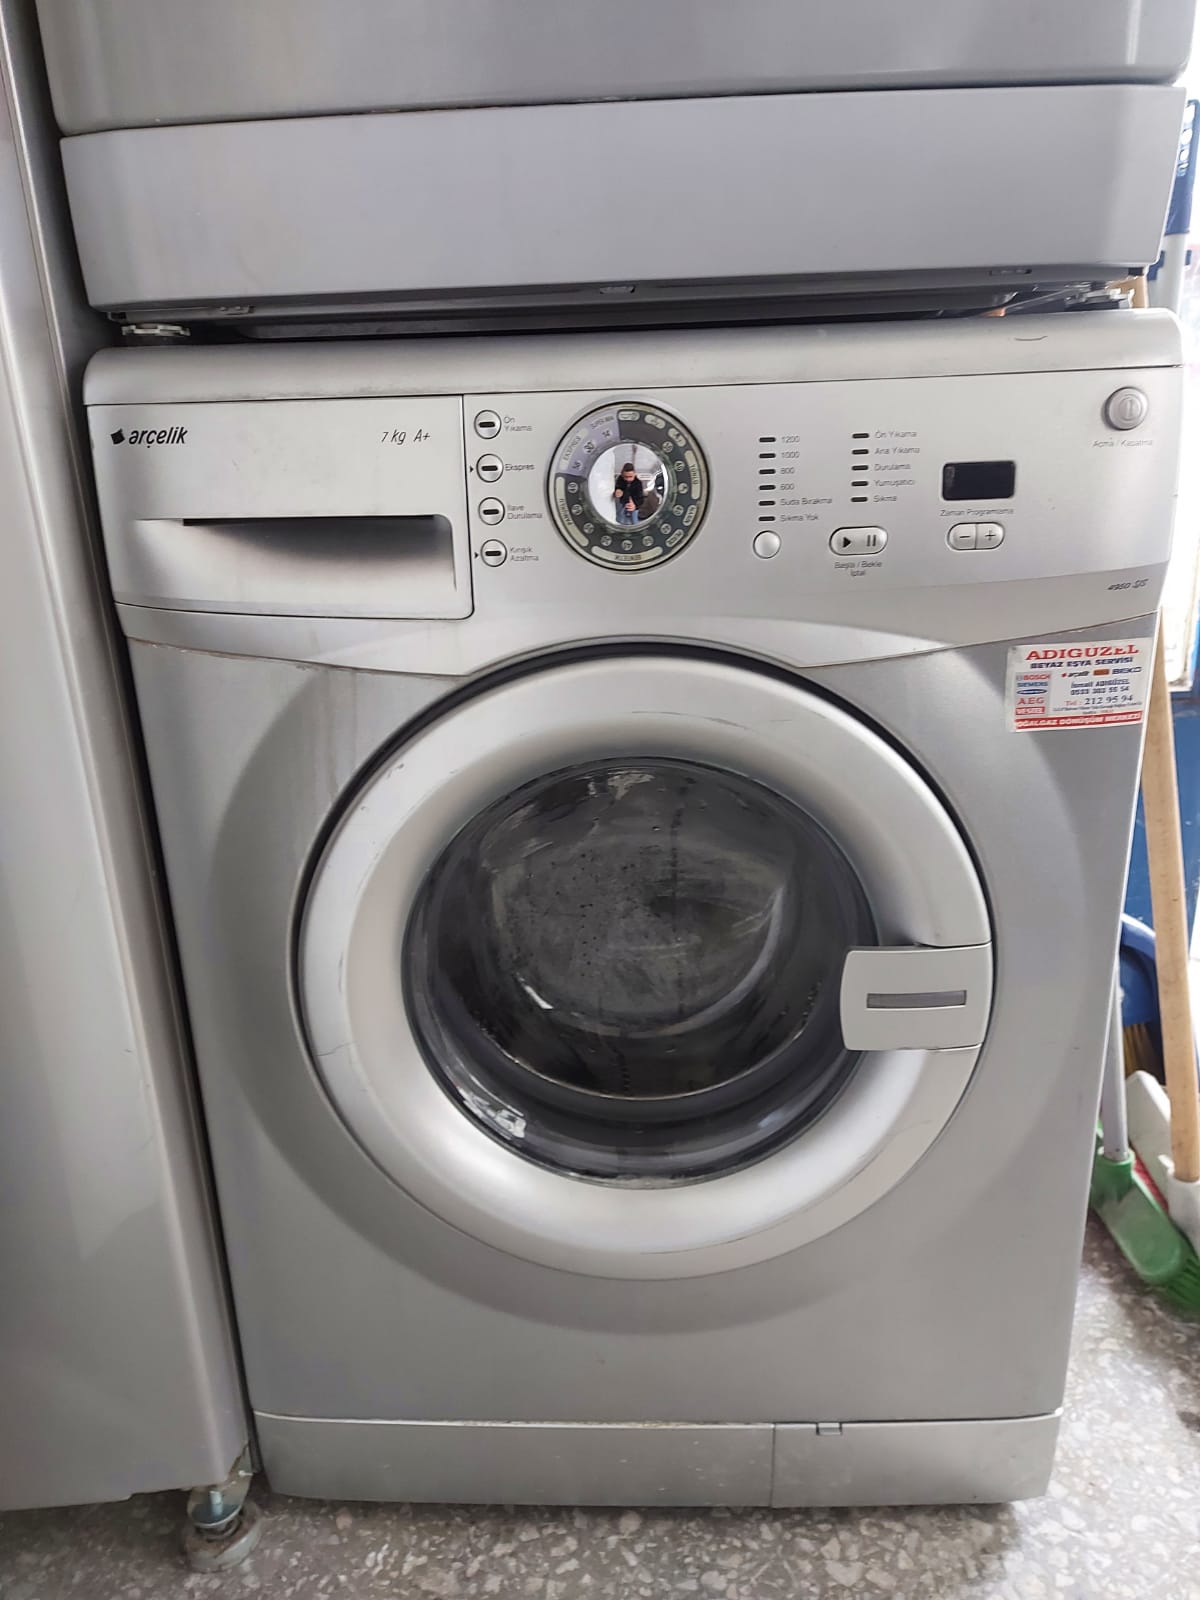 İkinci El Çamaşır Makineleri